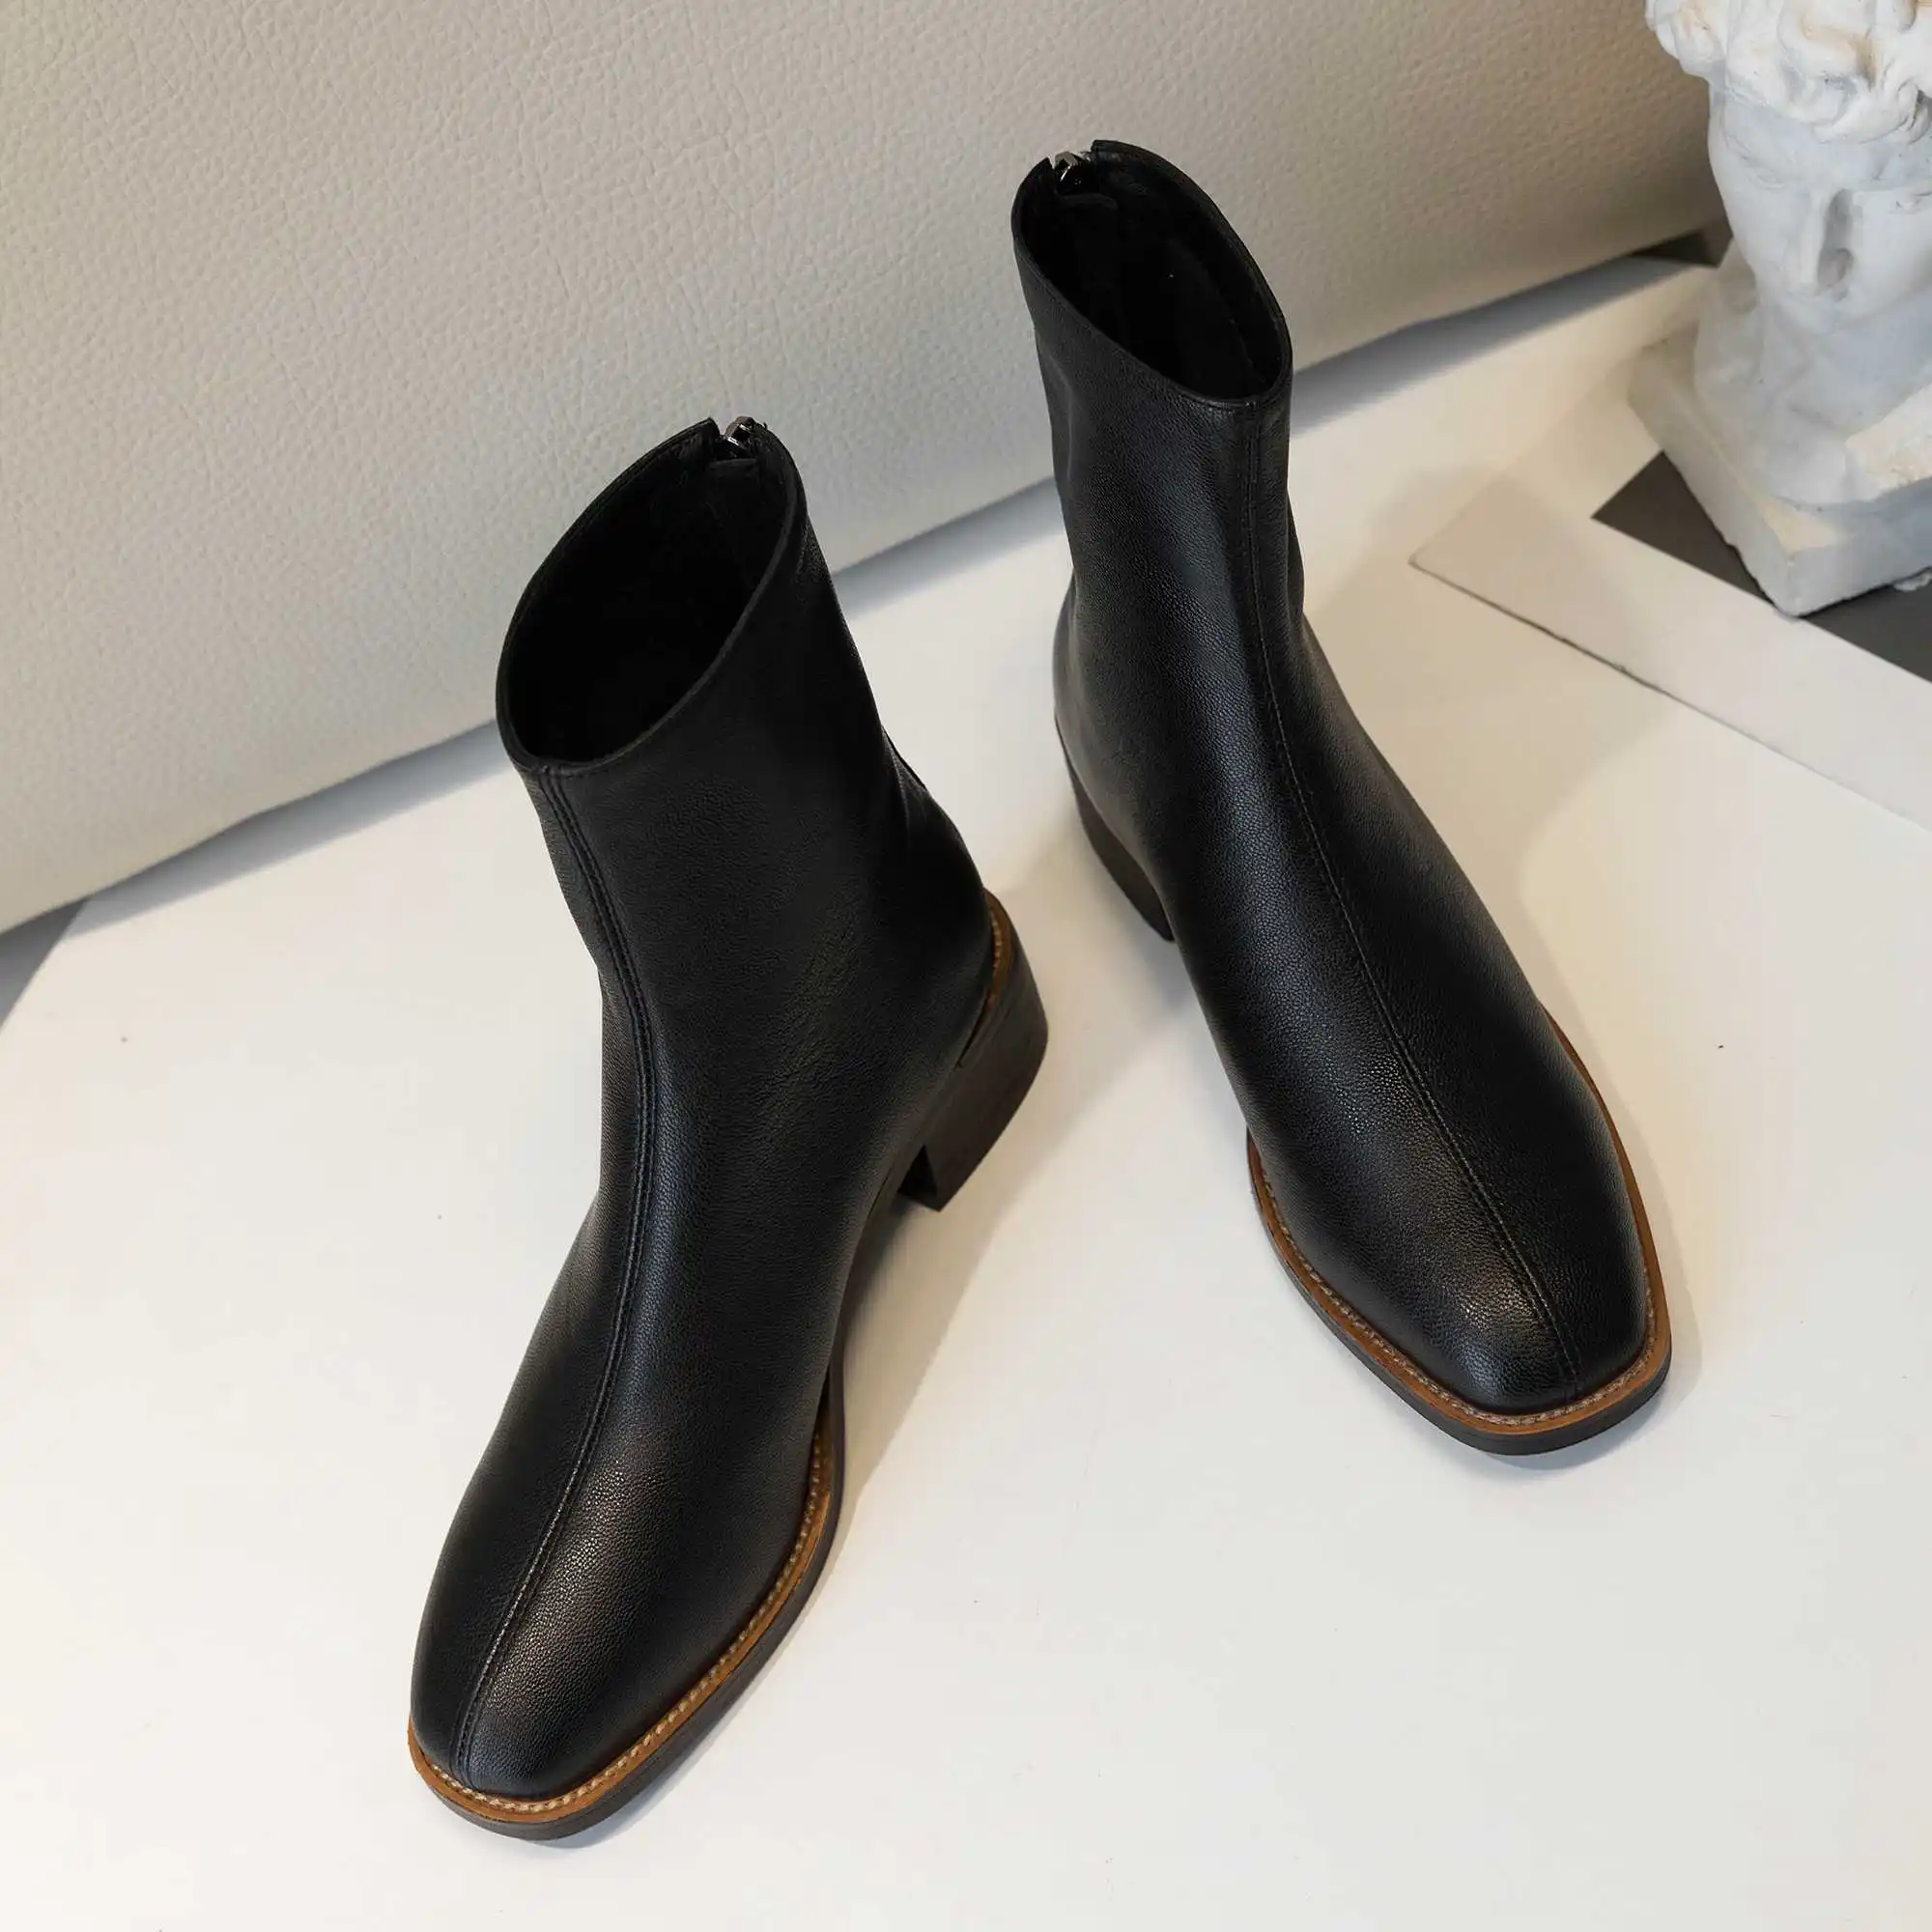 Krazing Pot/Модная женская обувь для отдыха из натуральной кожи в европейском стиле; Зимние ботильоны с круглым носком на среднем каблуке с молнией сзади; L16